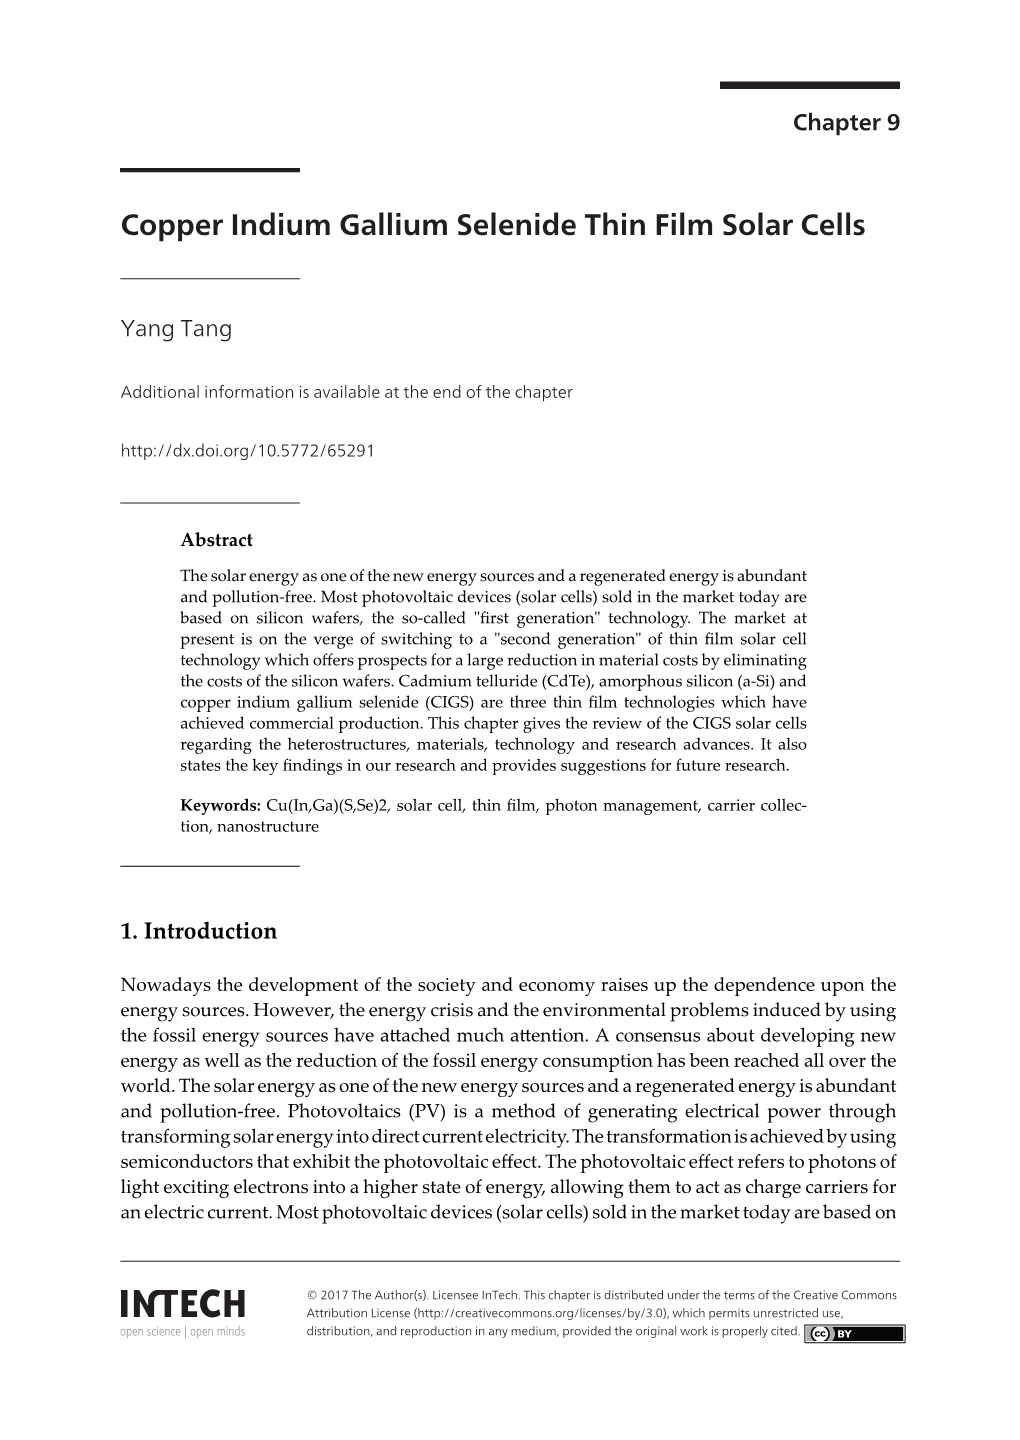 Copper Indium Gallium Selenide Thin Film Solar Cells Copper Indium Gallium Selenide Thin Film Solar Cells